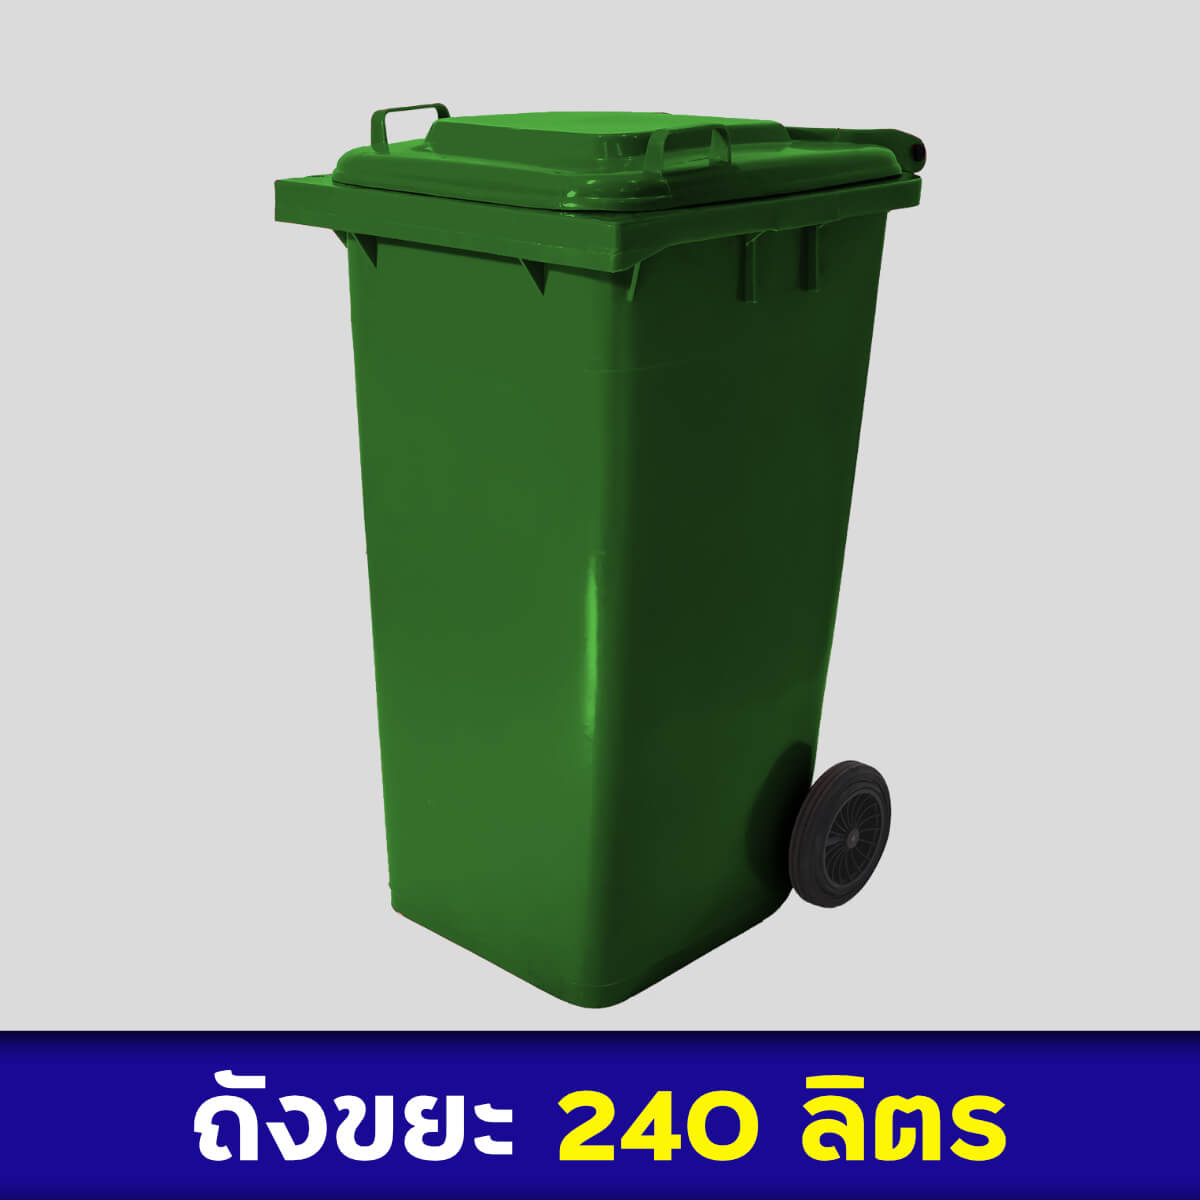 ถังขยะสีเขียว 240ลิตร